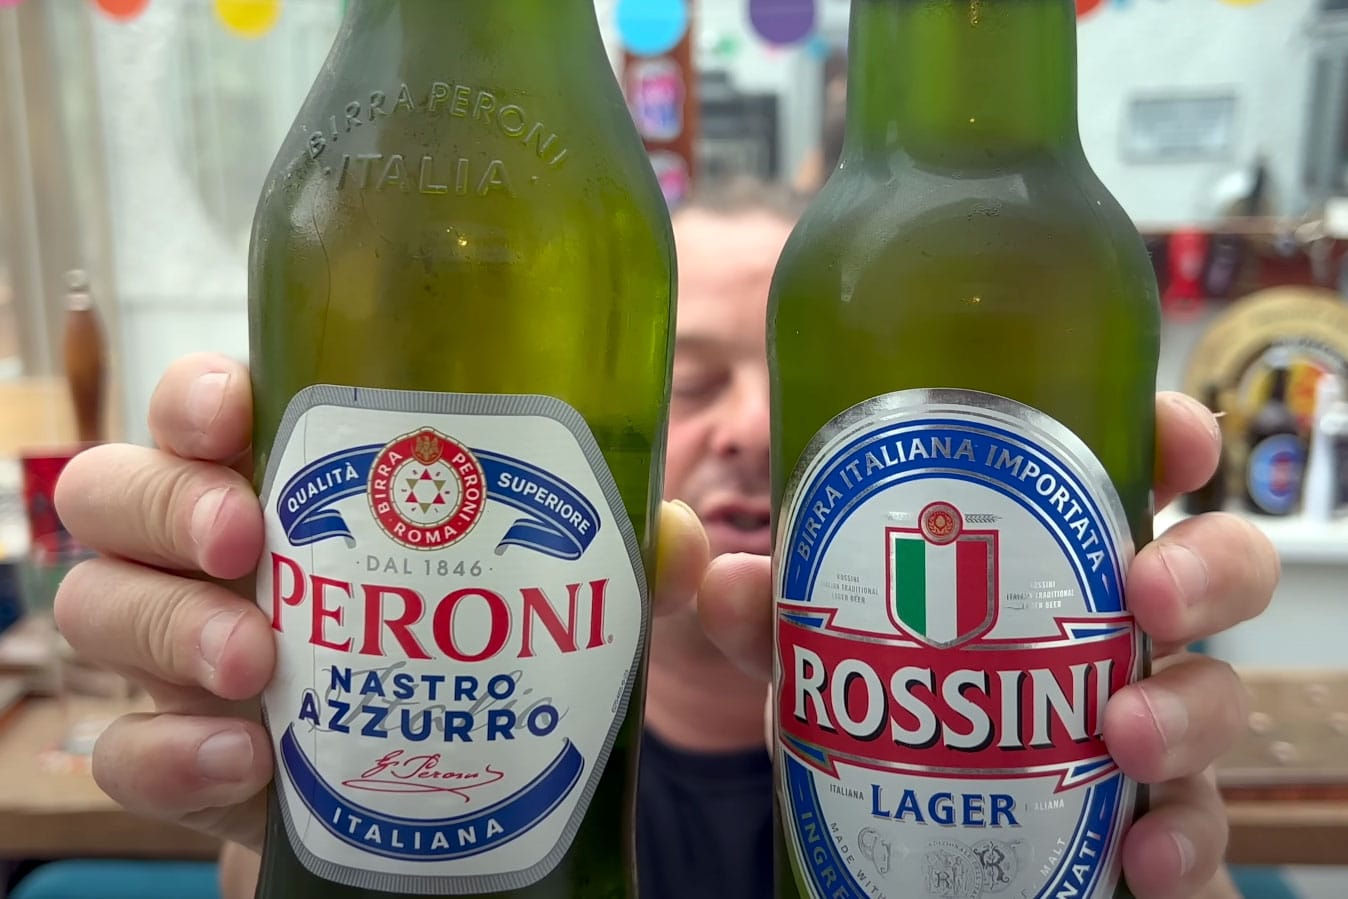 Peroni Nastro Azzurro Lager Vs Aldi Rossini Lager